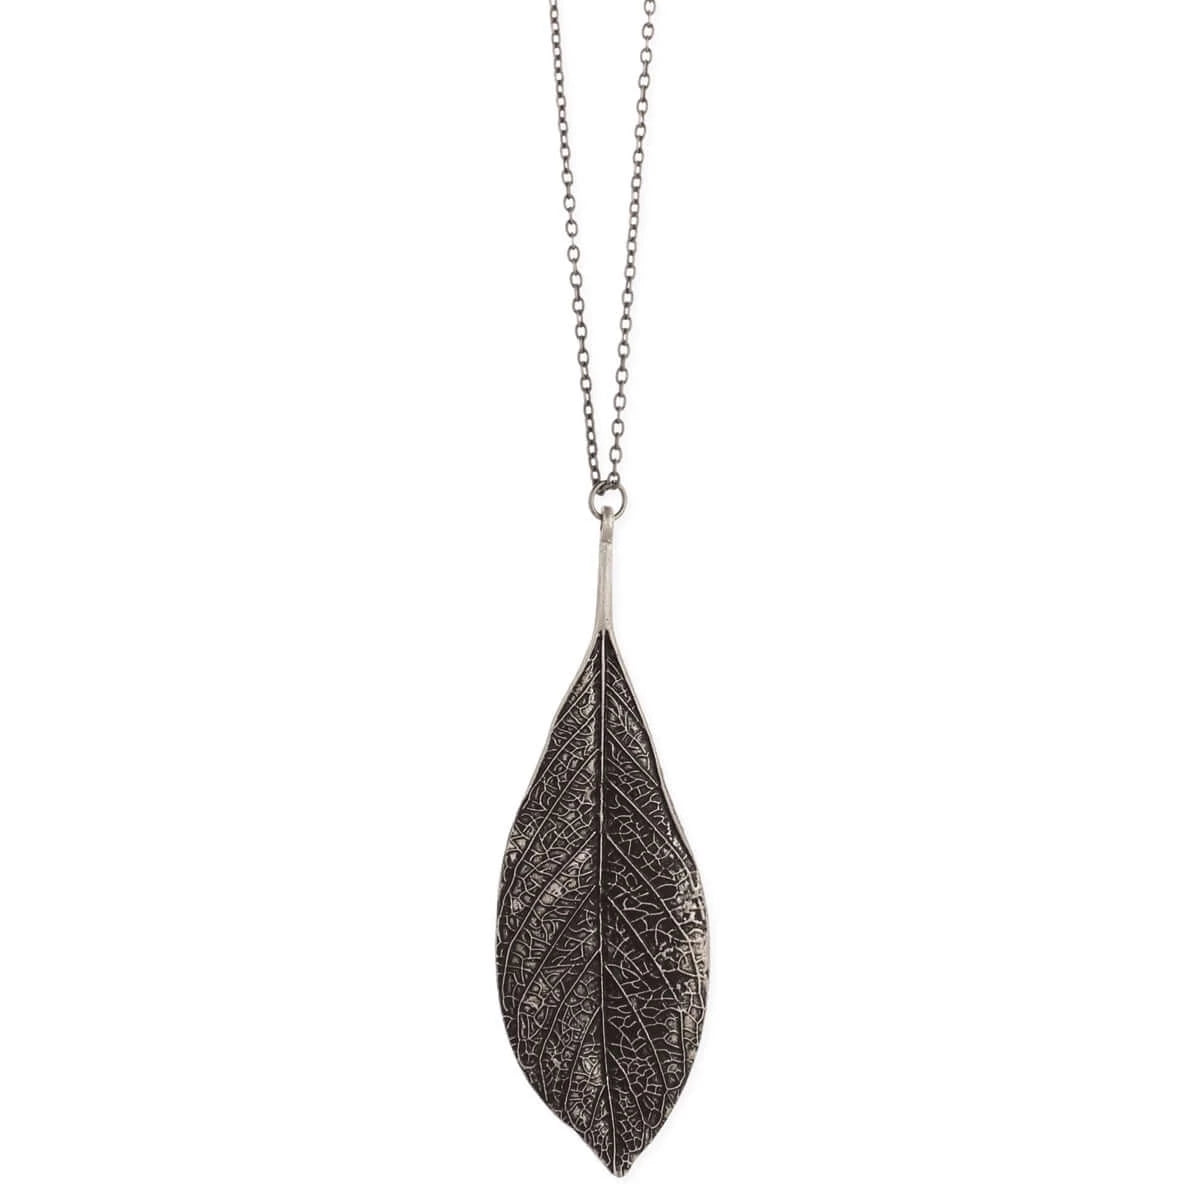 Stunning Antiqued Silver Leaf Necklace